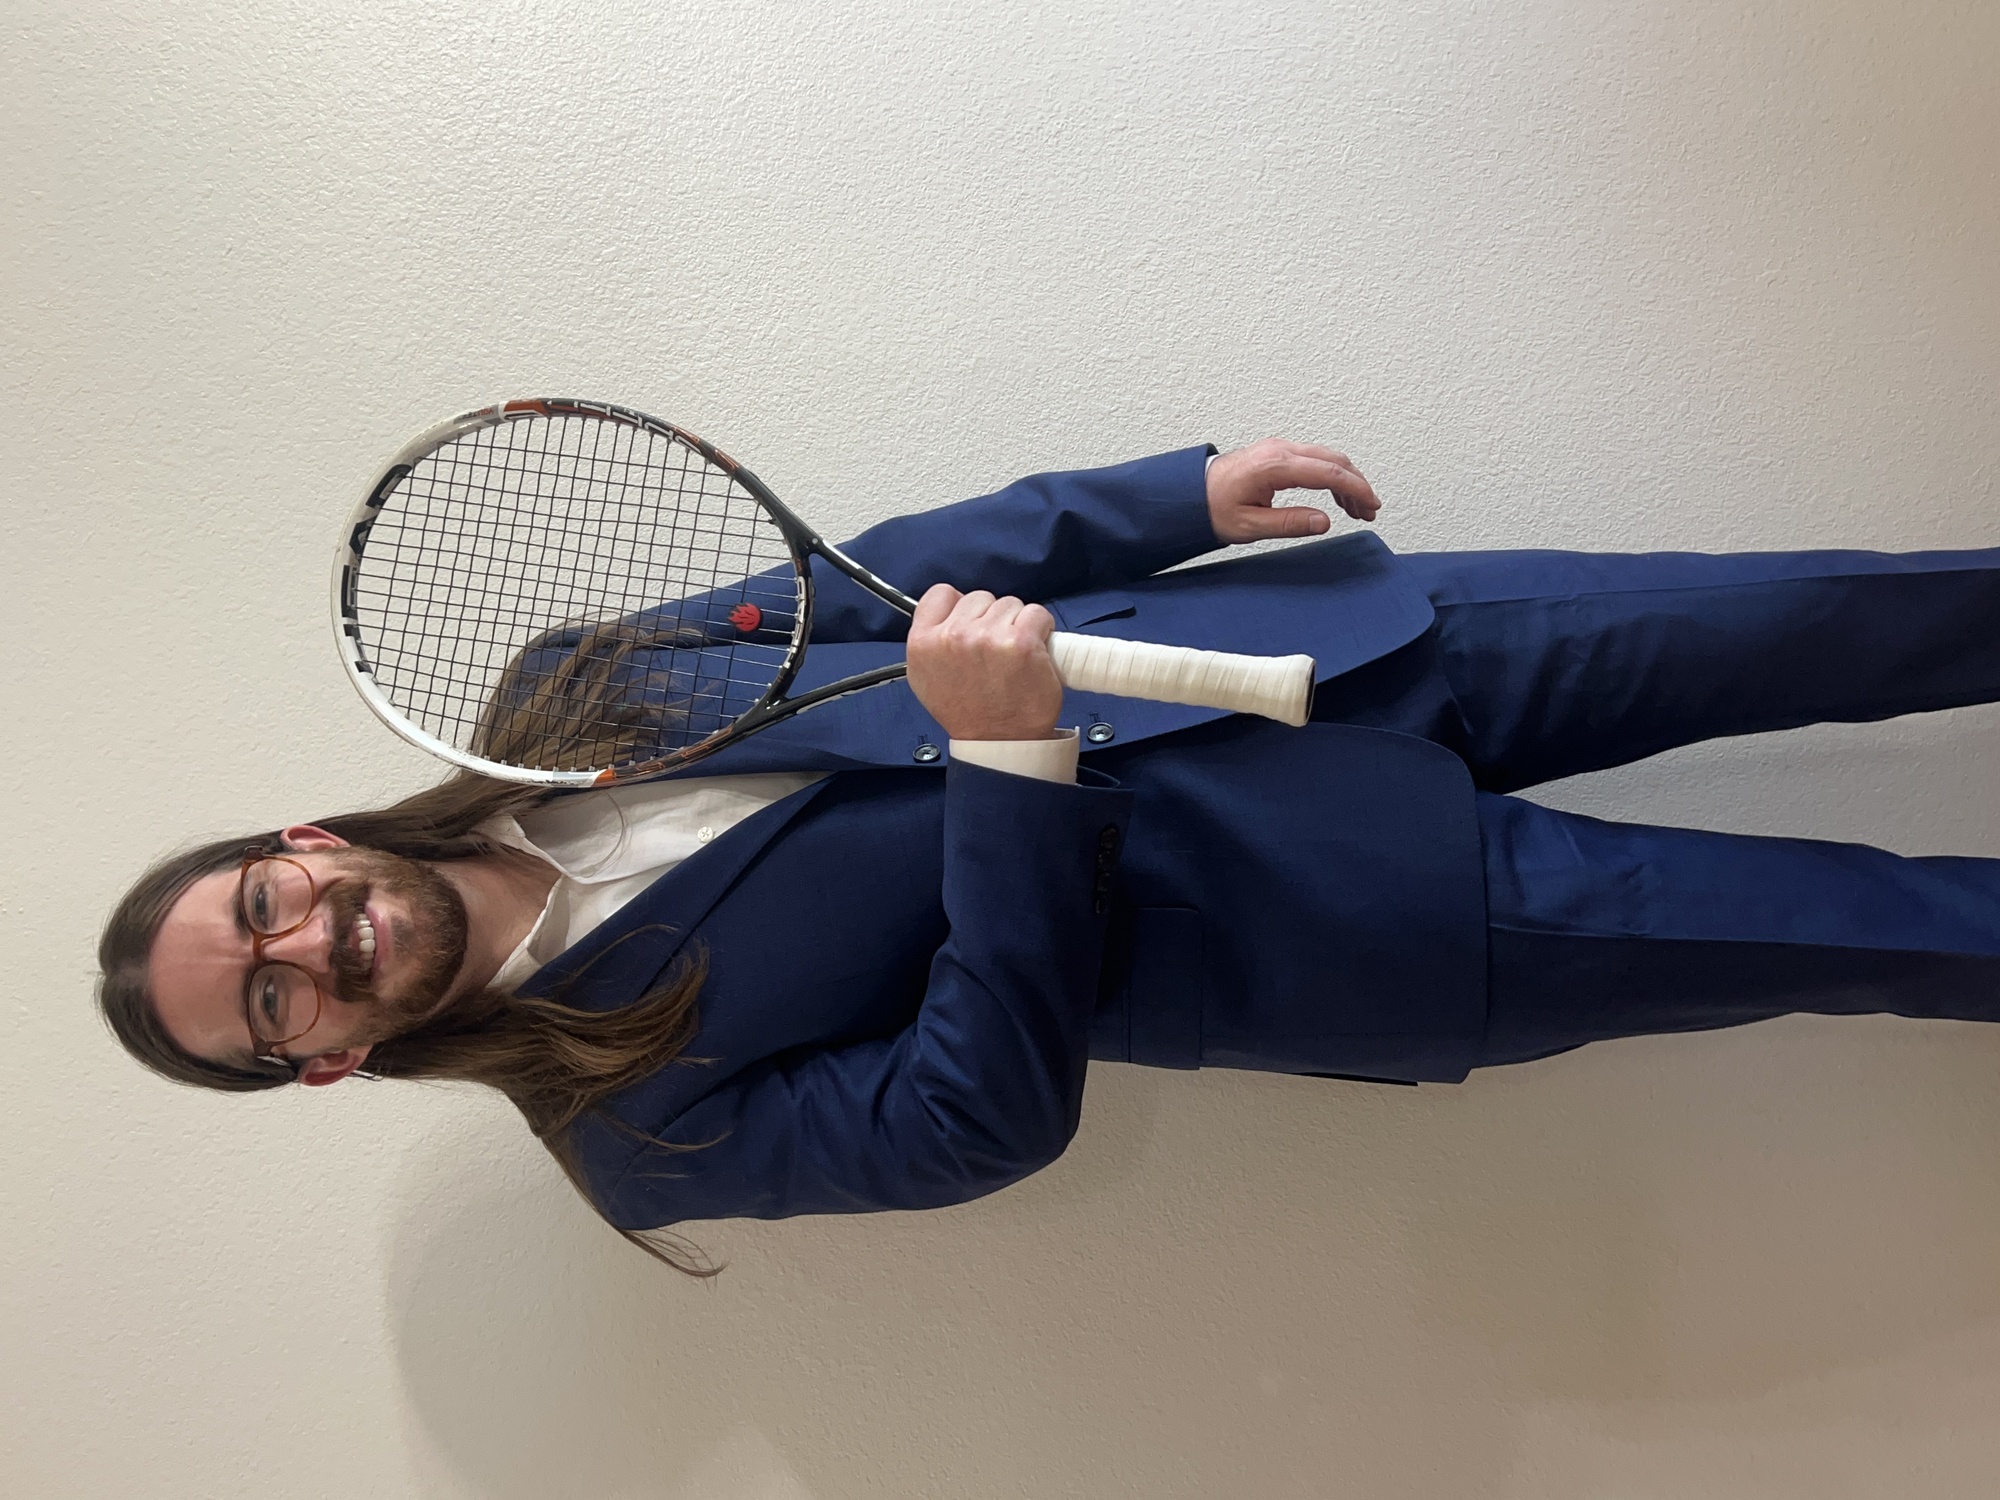 Gavin R. teaches tennis lessons in Mesa , AZ